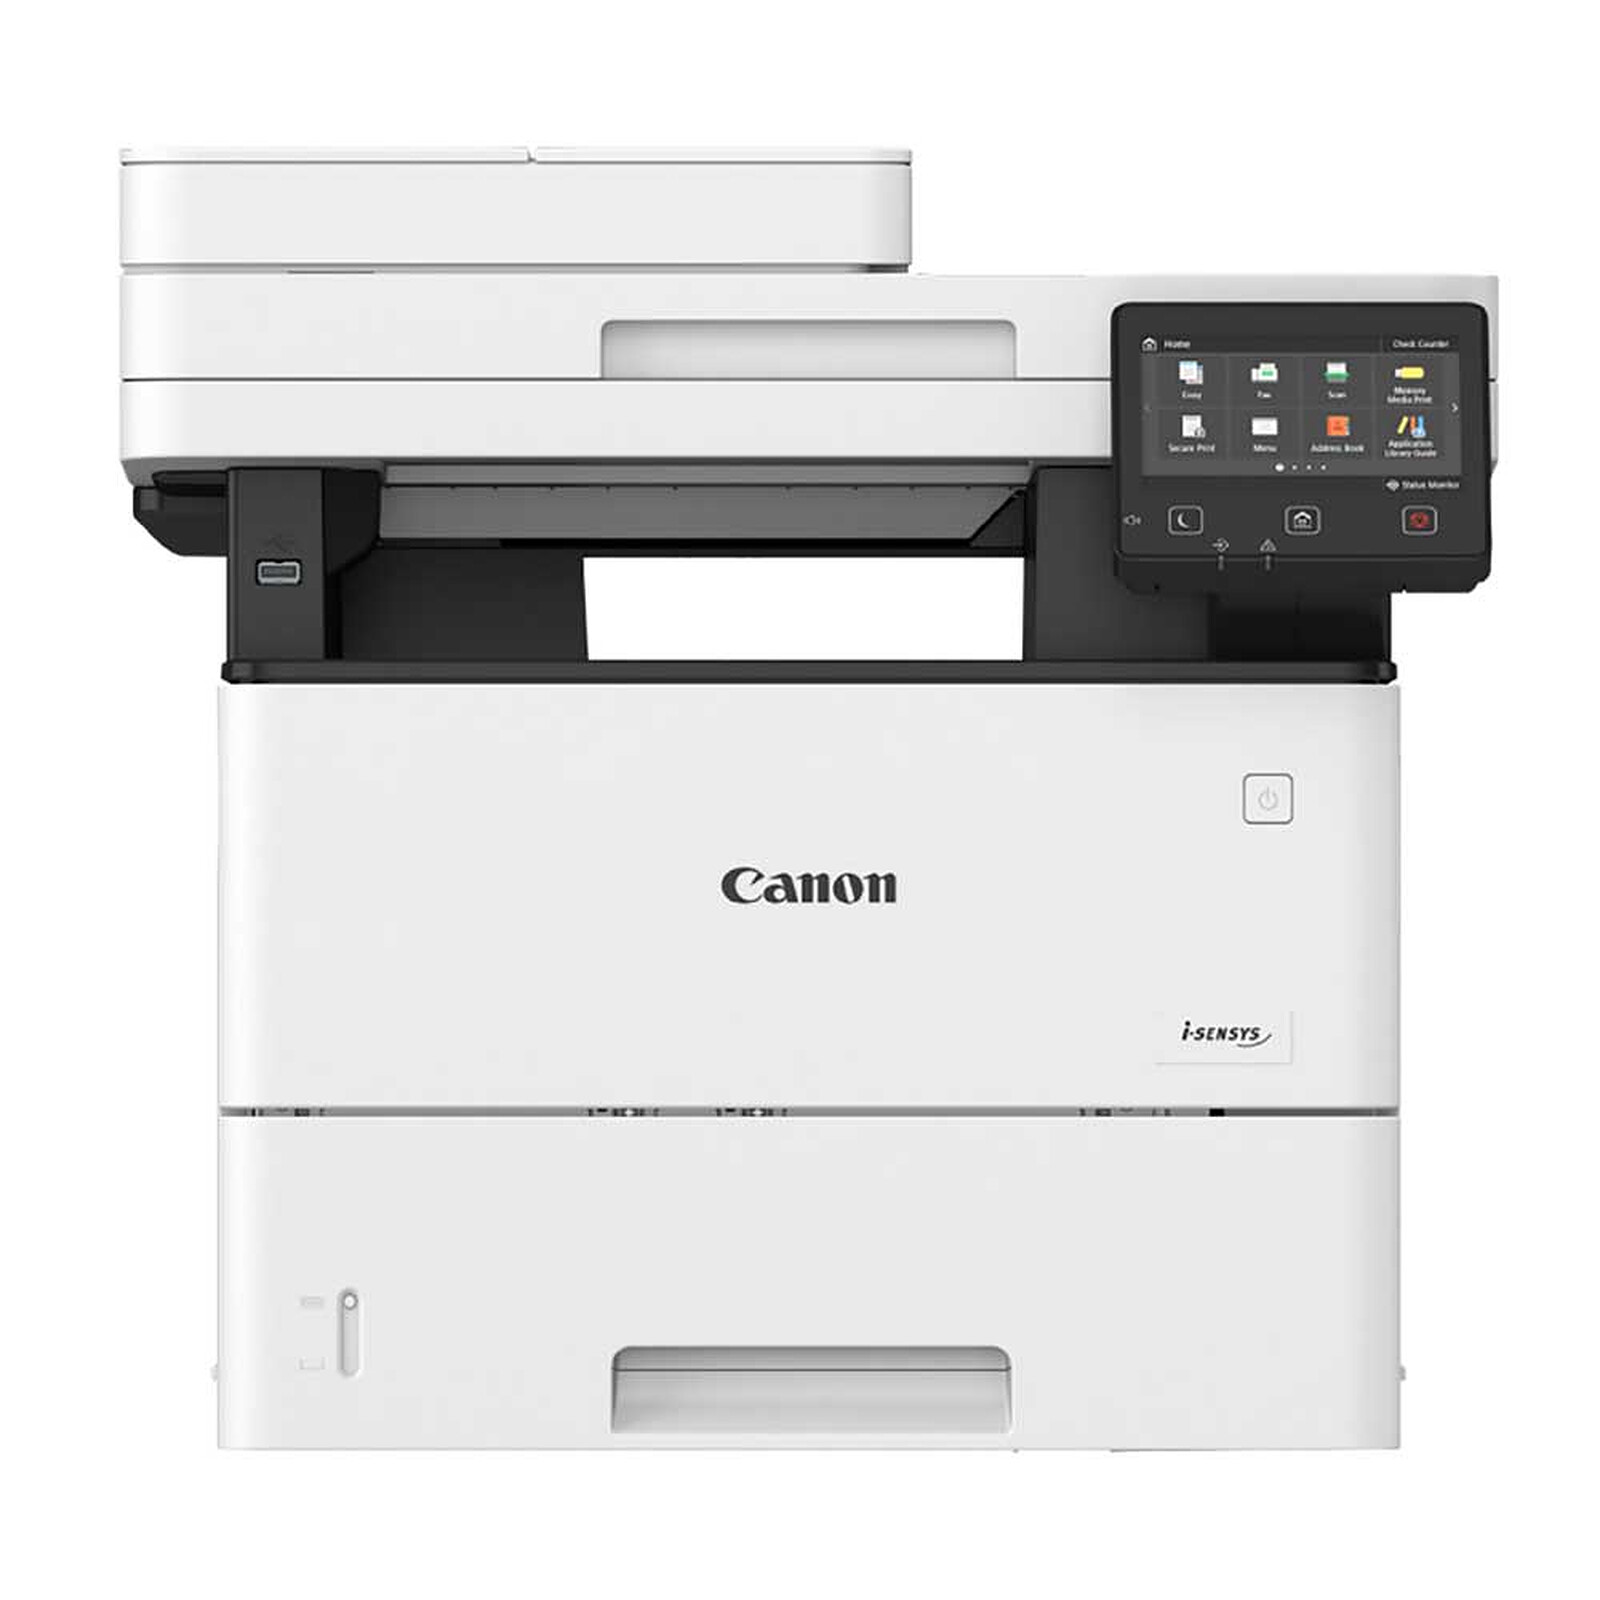 Canon i-SENSYS MF552dw printer on LDLC